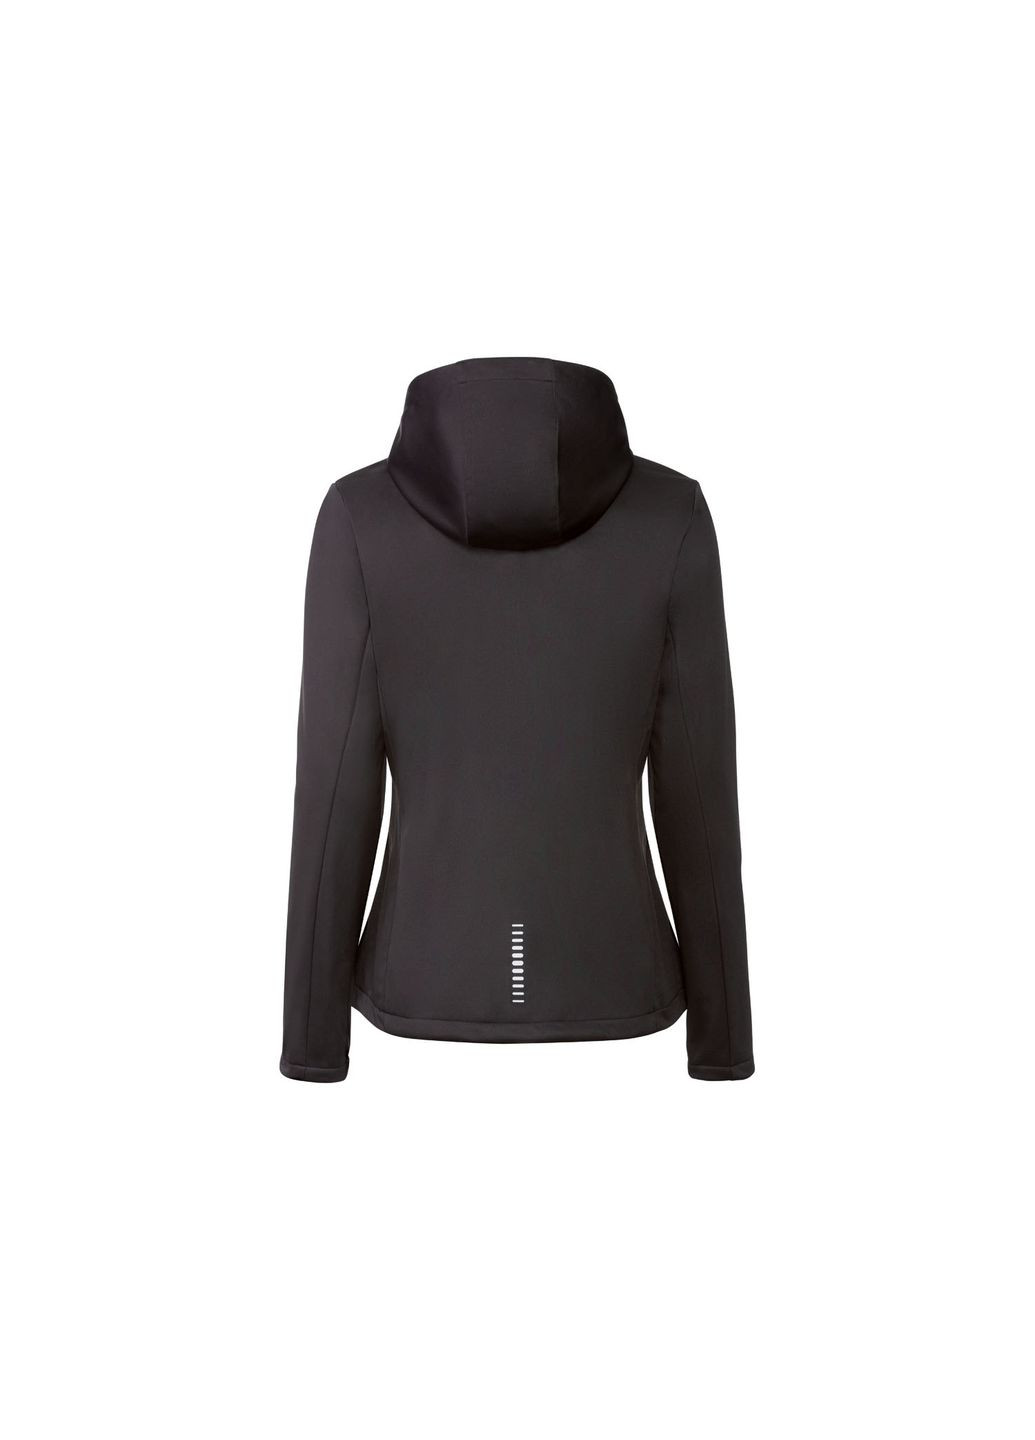 Чорна демісезонна куртка oftshell водовідштовхувальна та вітрозахисна для жінки 358117 s чорний Crivit